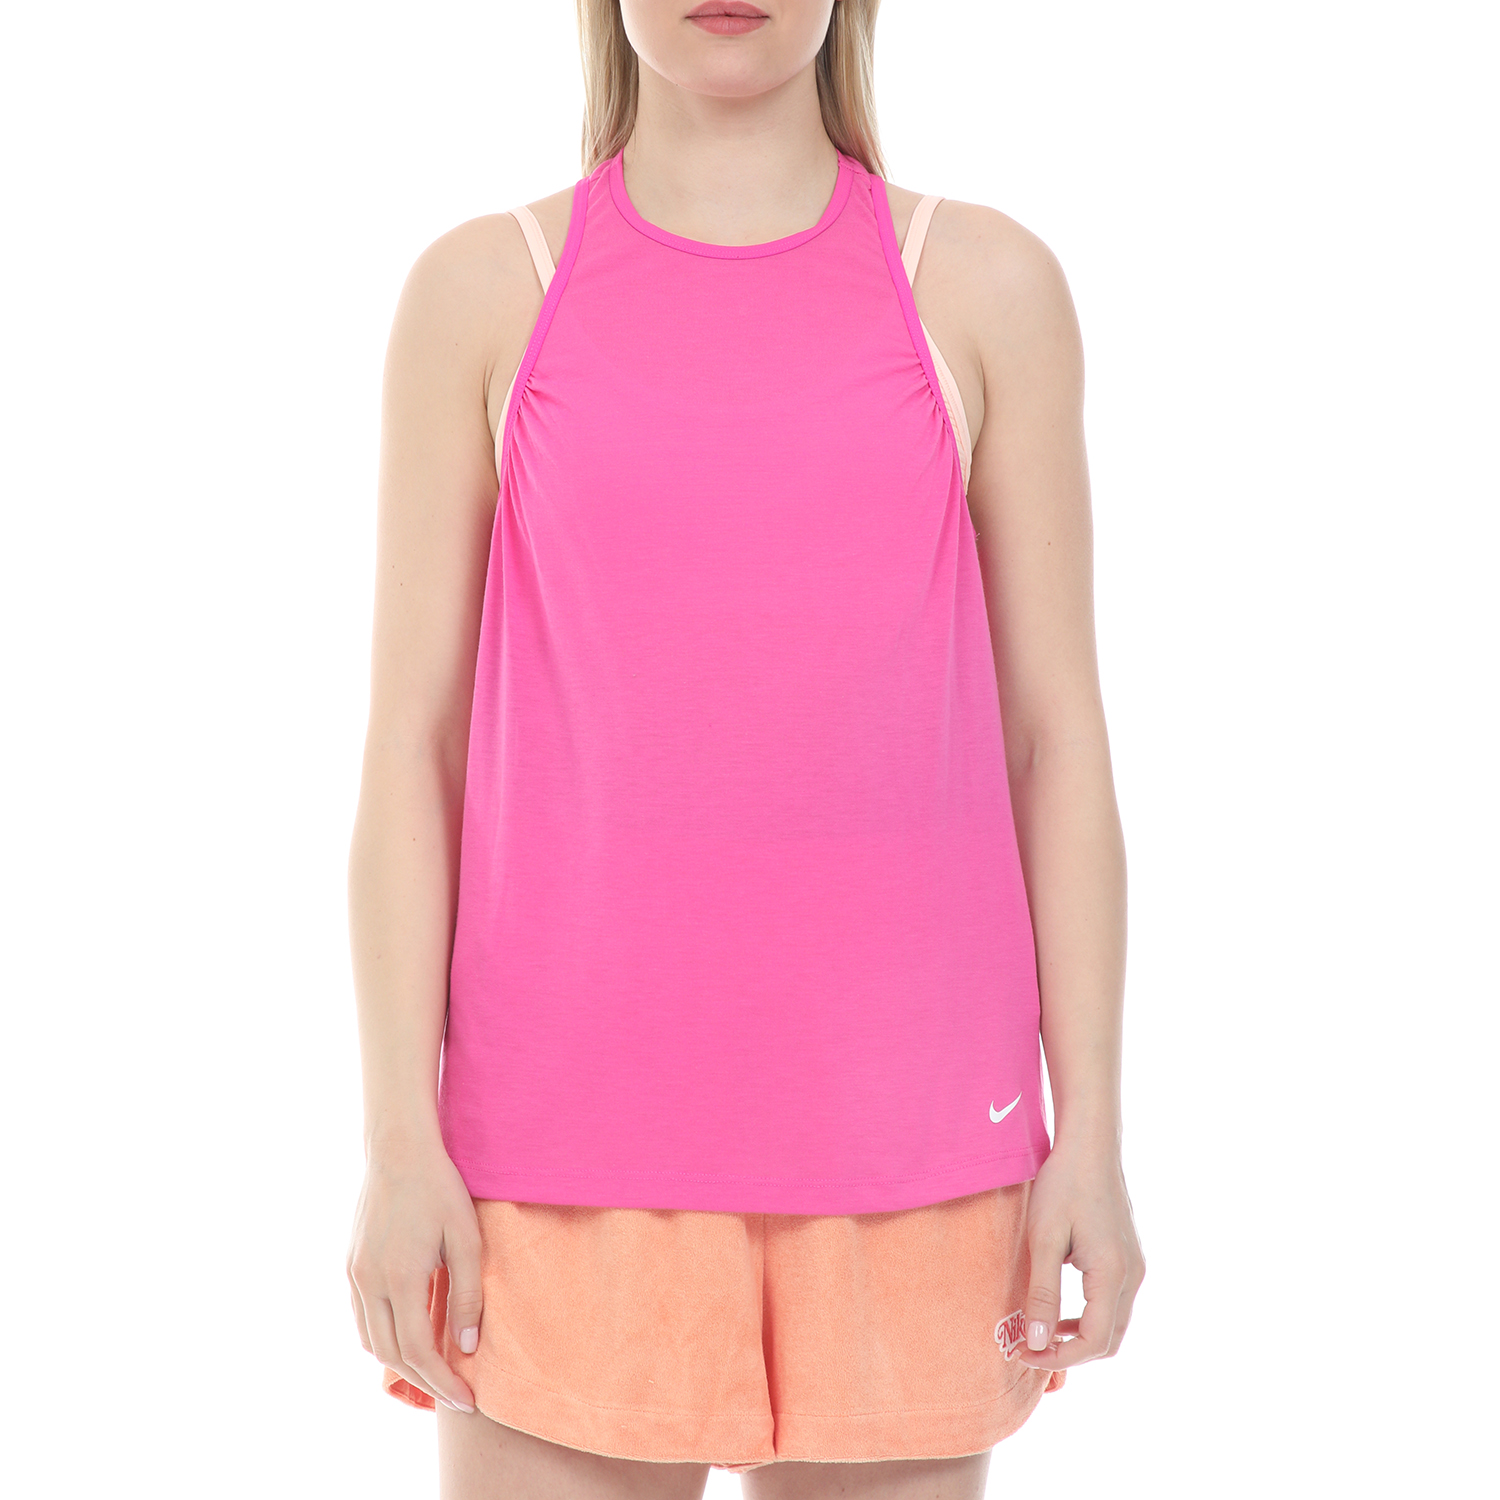 Γυναικεία/Ρούχα/Αθλητικά/T-shirt-Τοπ NIKE - Γυναικείο top NIKE TANK ICN CLSH BST ροζ